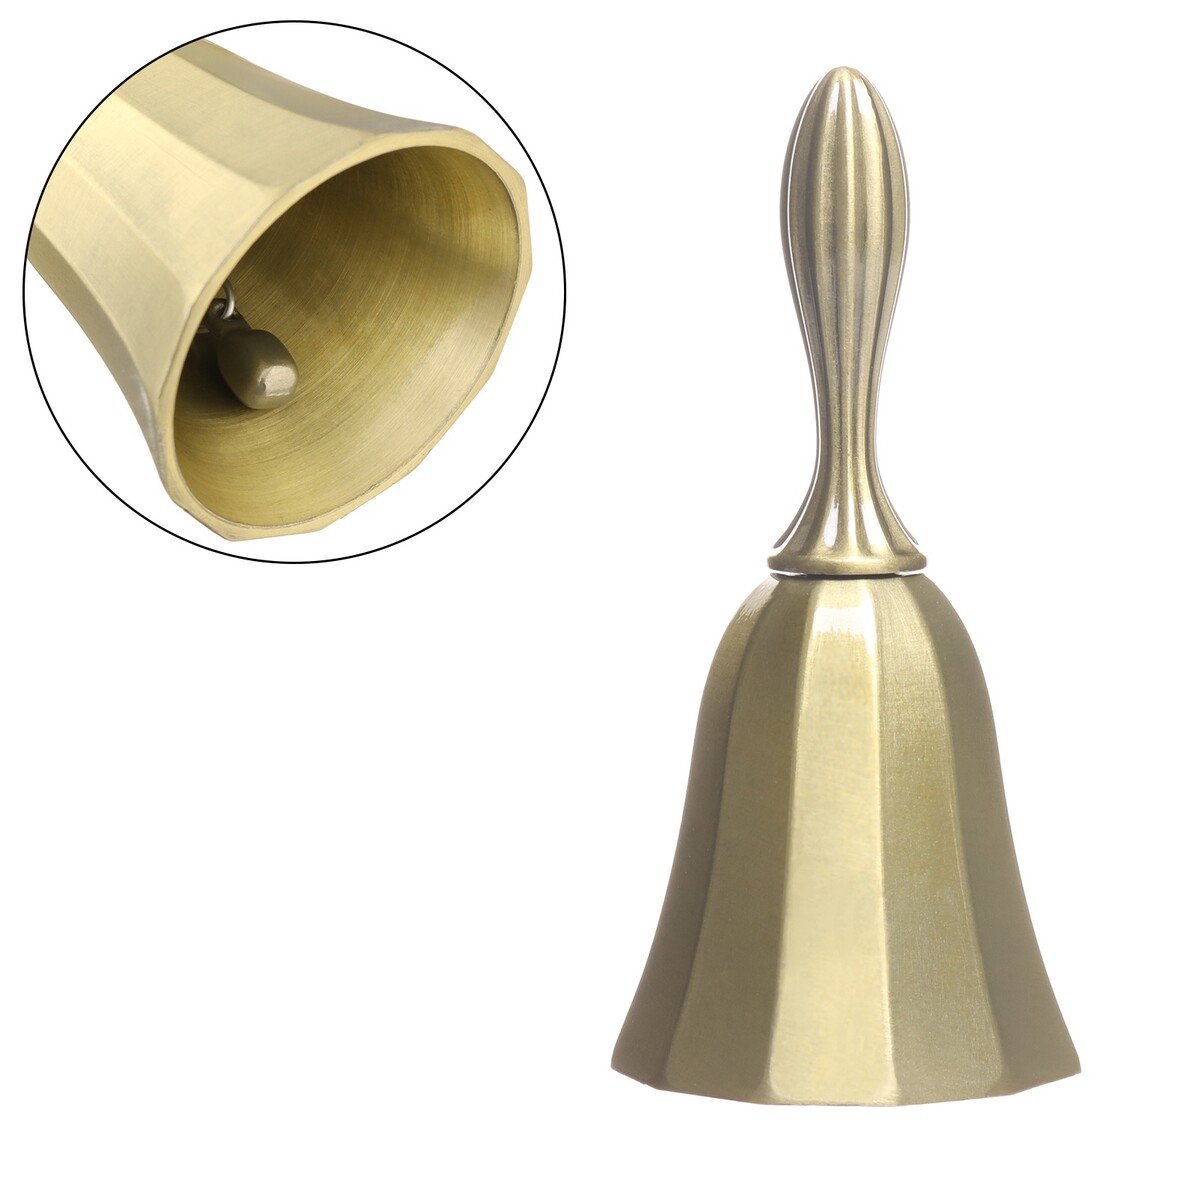 Колокольчик металлический,10 х 4 см, бронза колокольчик металлический с гравюрой 11 3 х 5 4 см золото